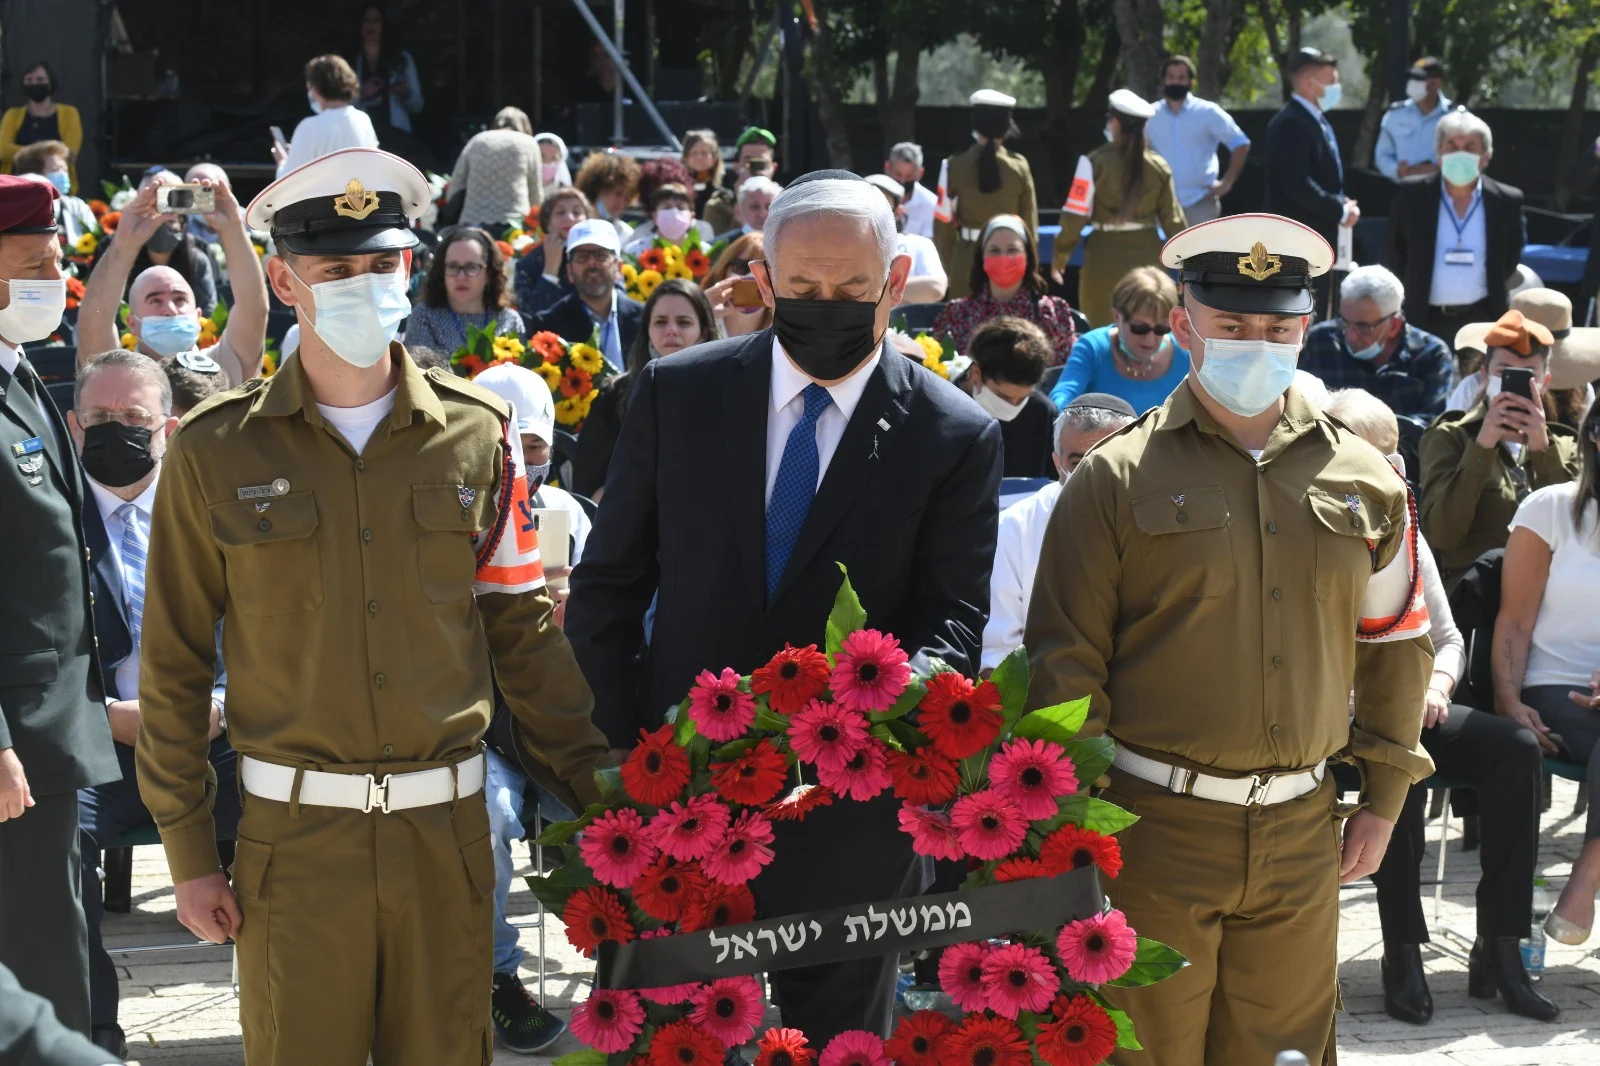 ראש הממשלה בנימין נתניהו בטקס הנחת הזרים ליום הזיכרון לשואה ולגבורה ביד ושם